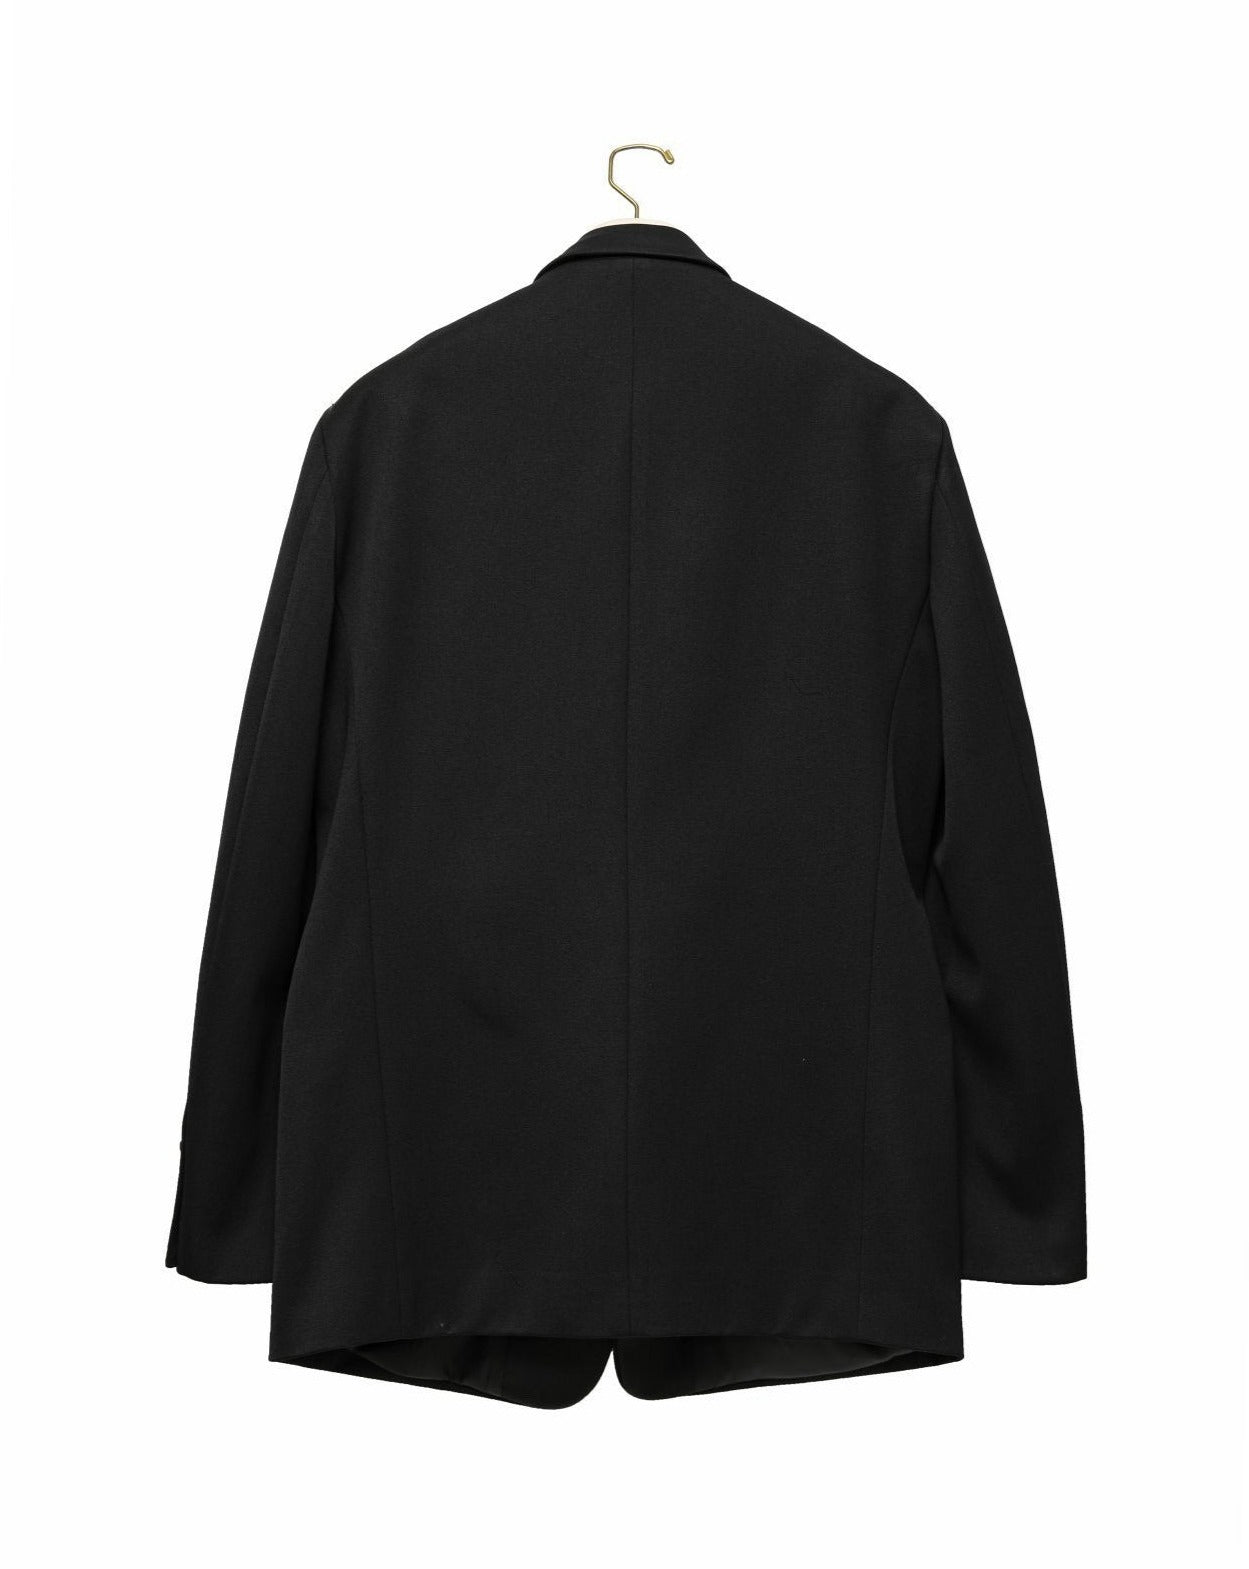 [PAPERMOON] SS / Satin Peaked Lapel Oversized Tuxedo Blazer